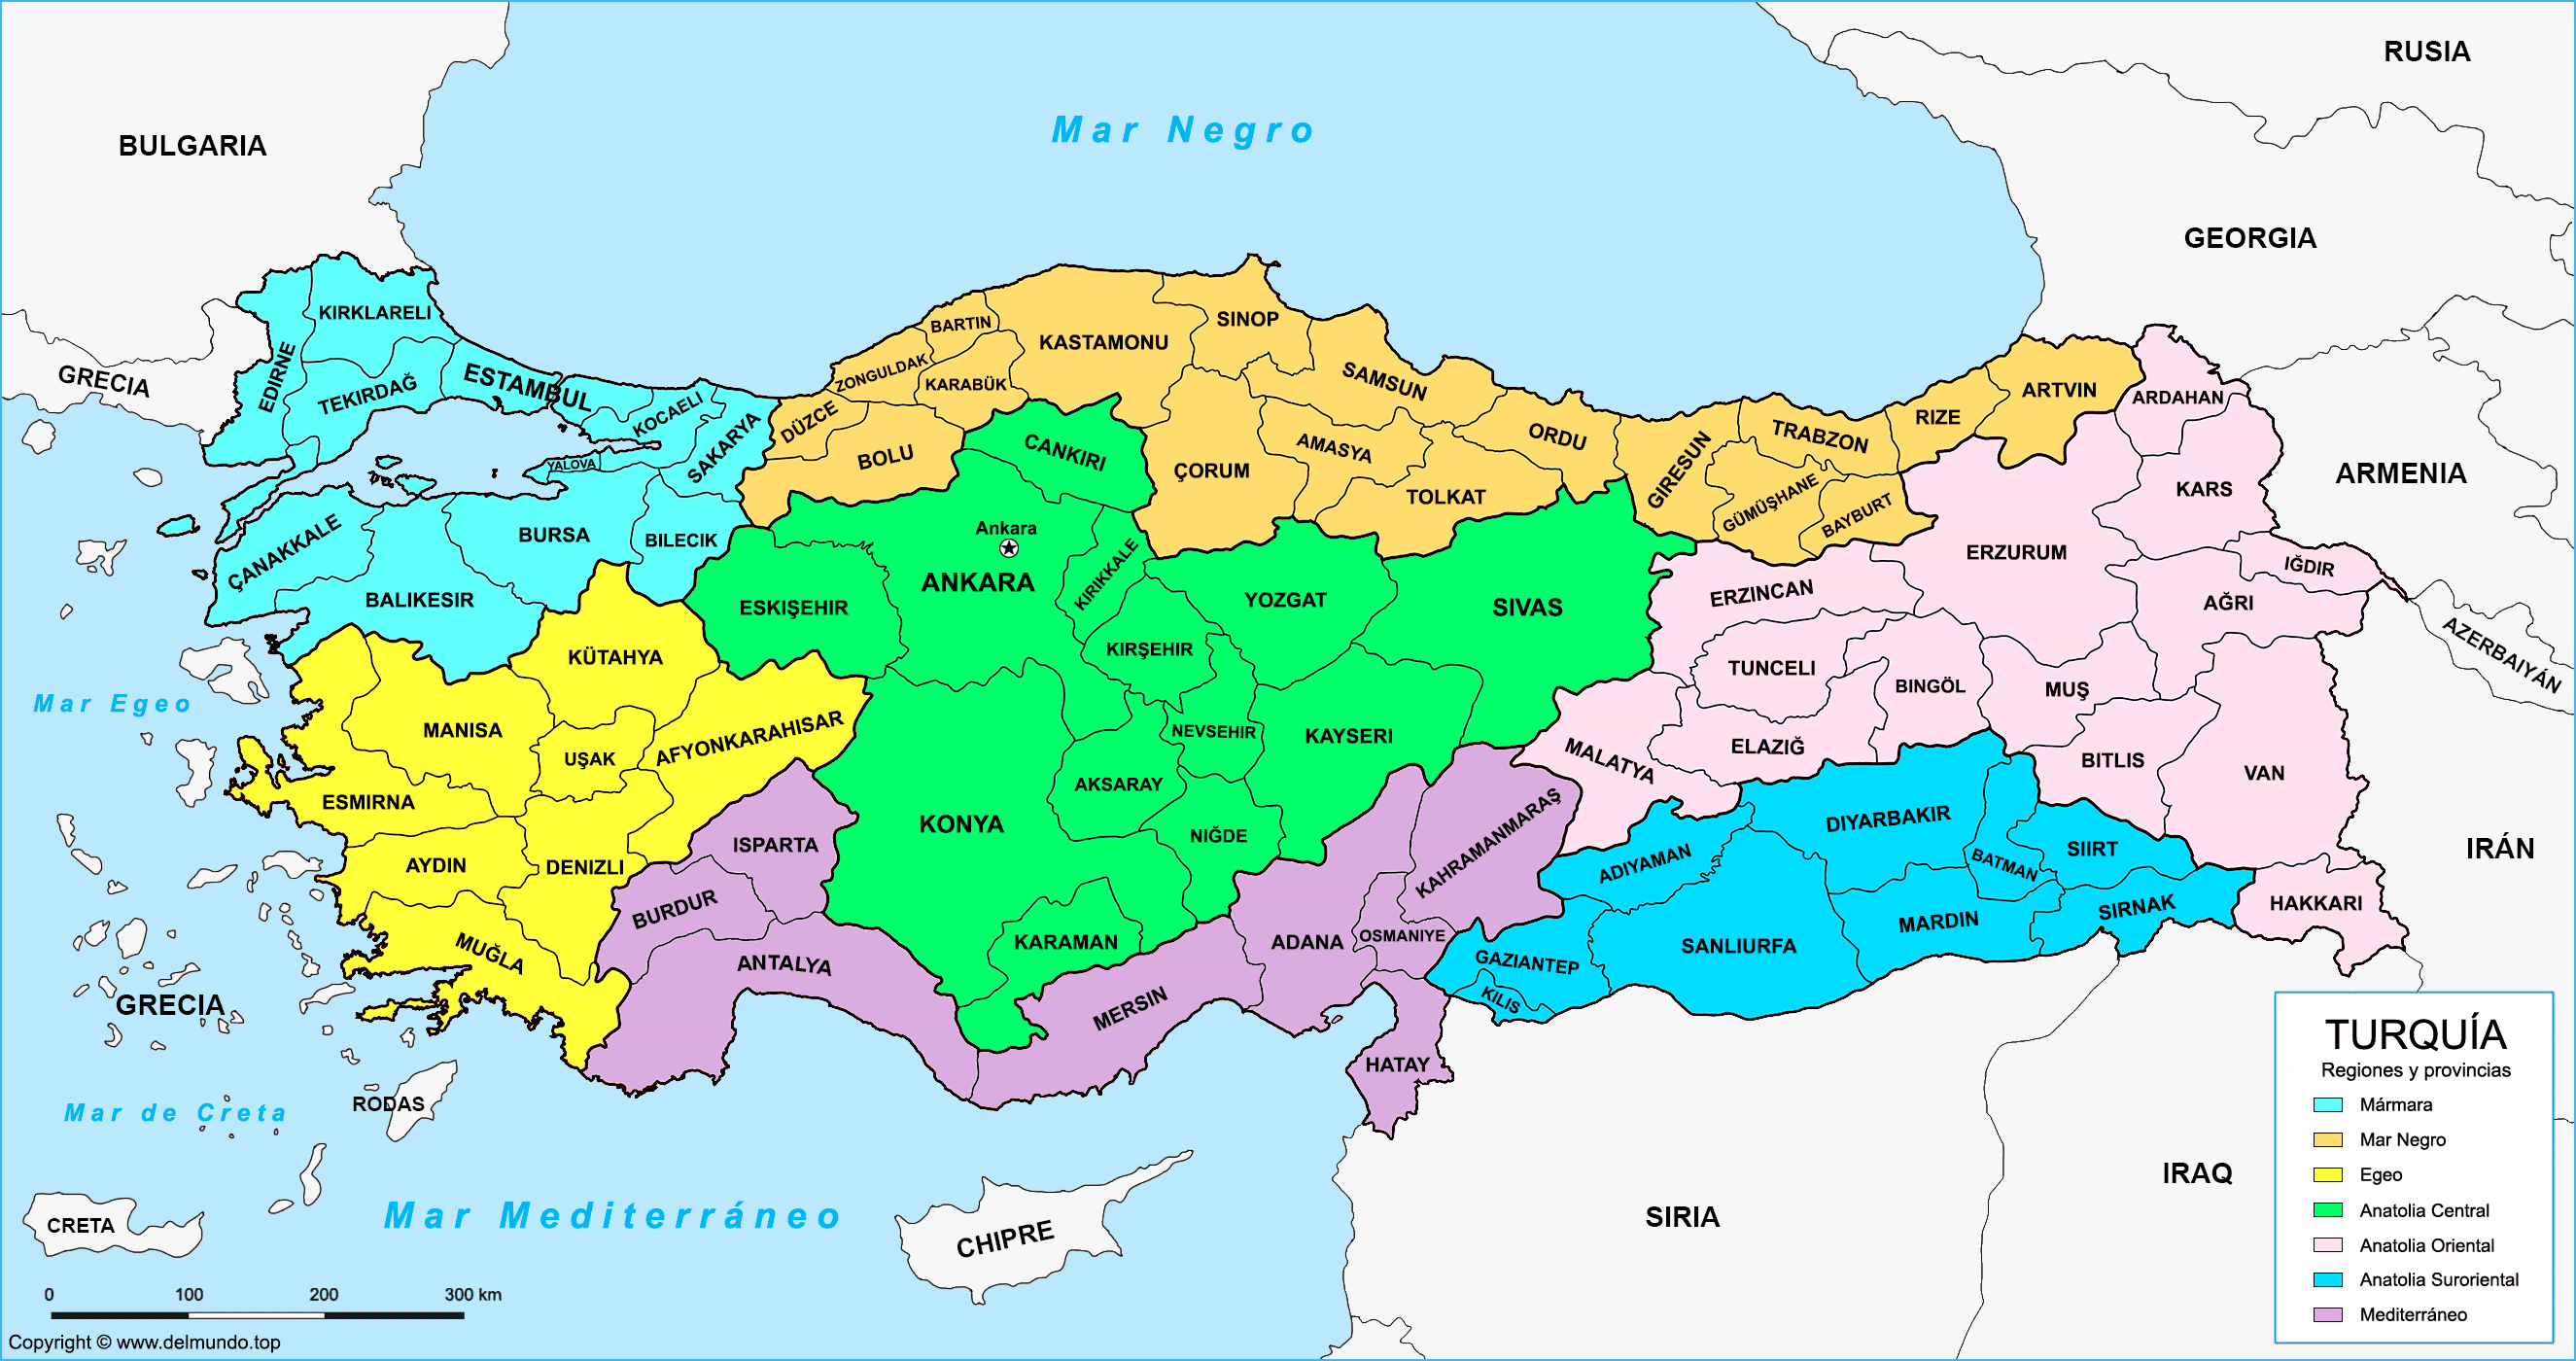 Mapa político de Turquía